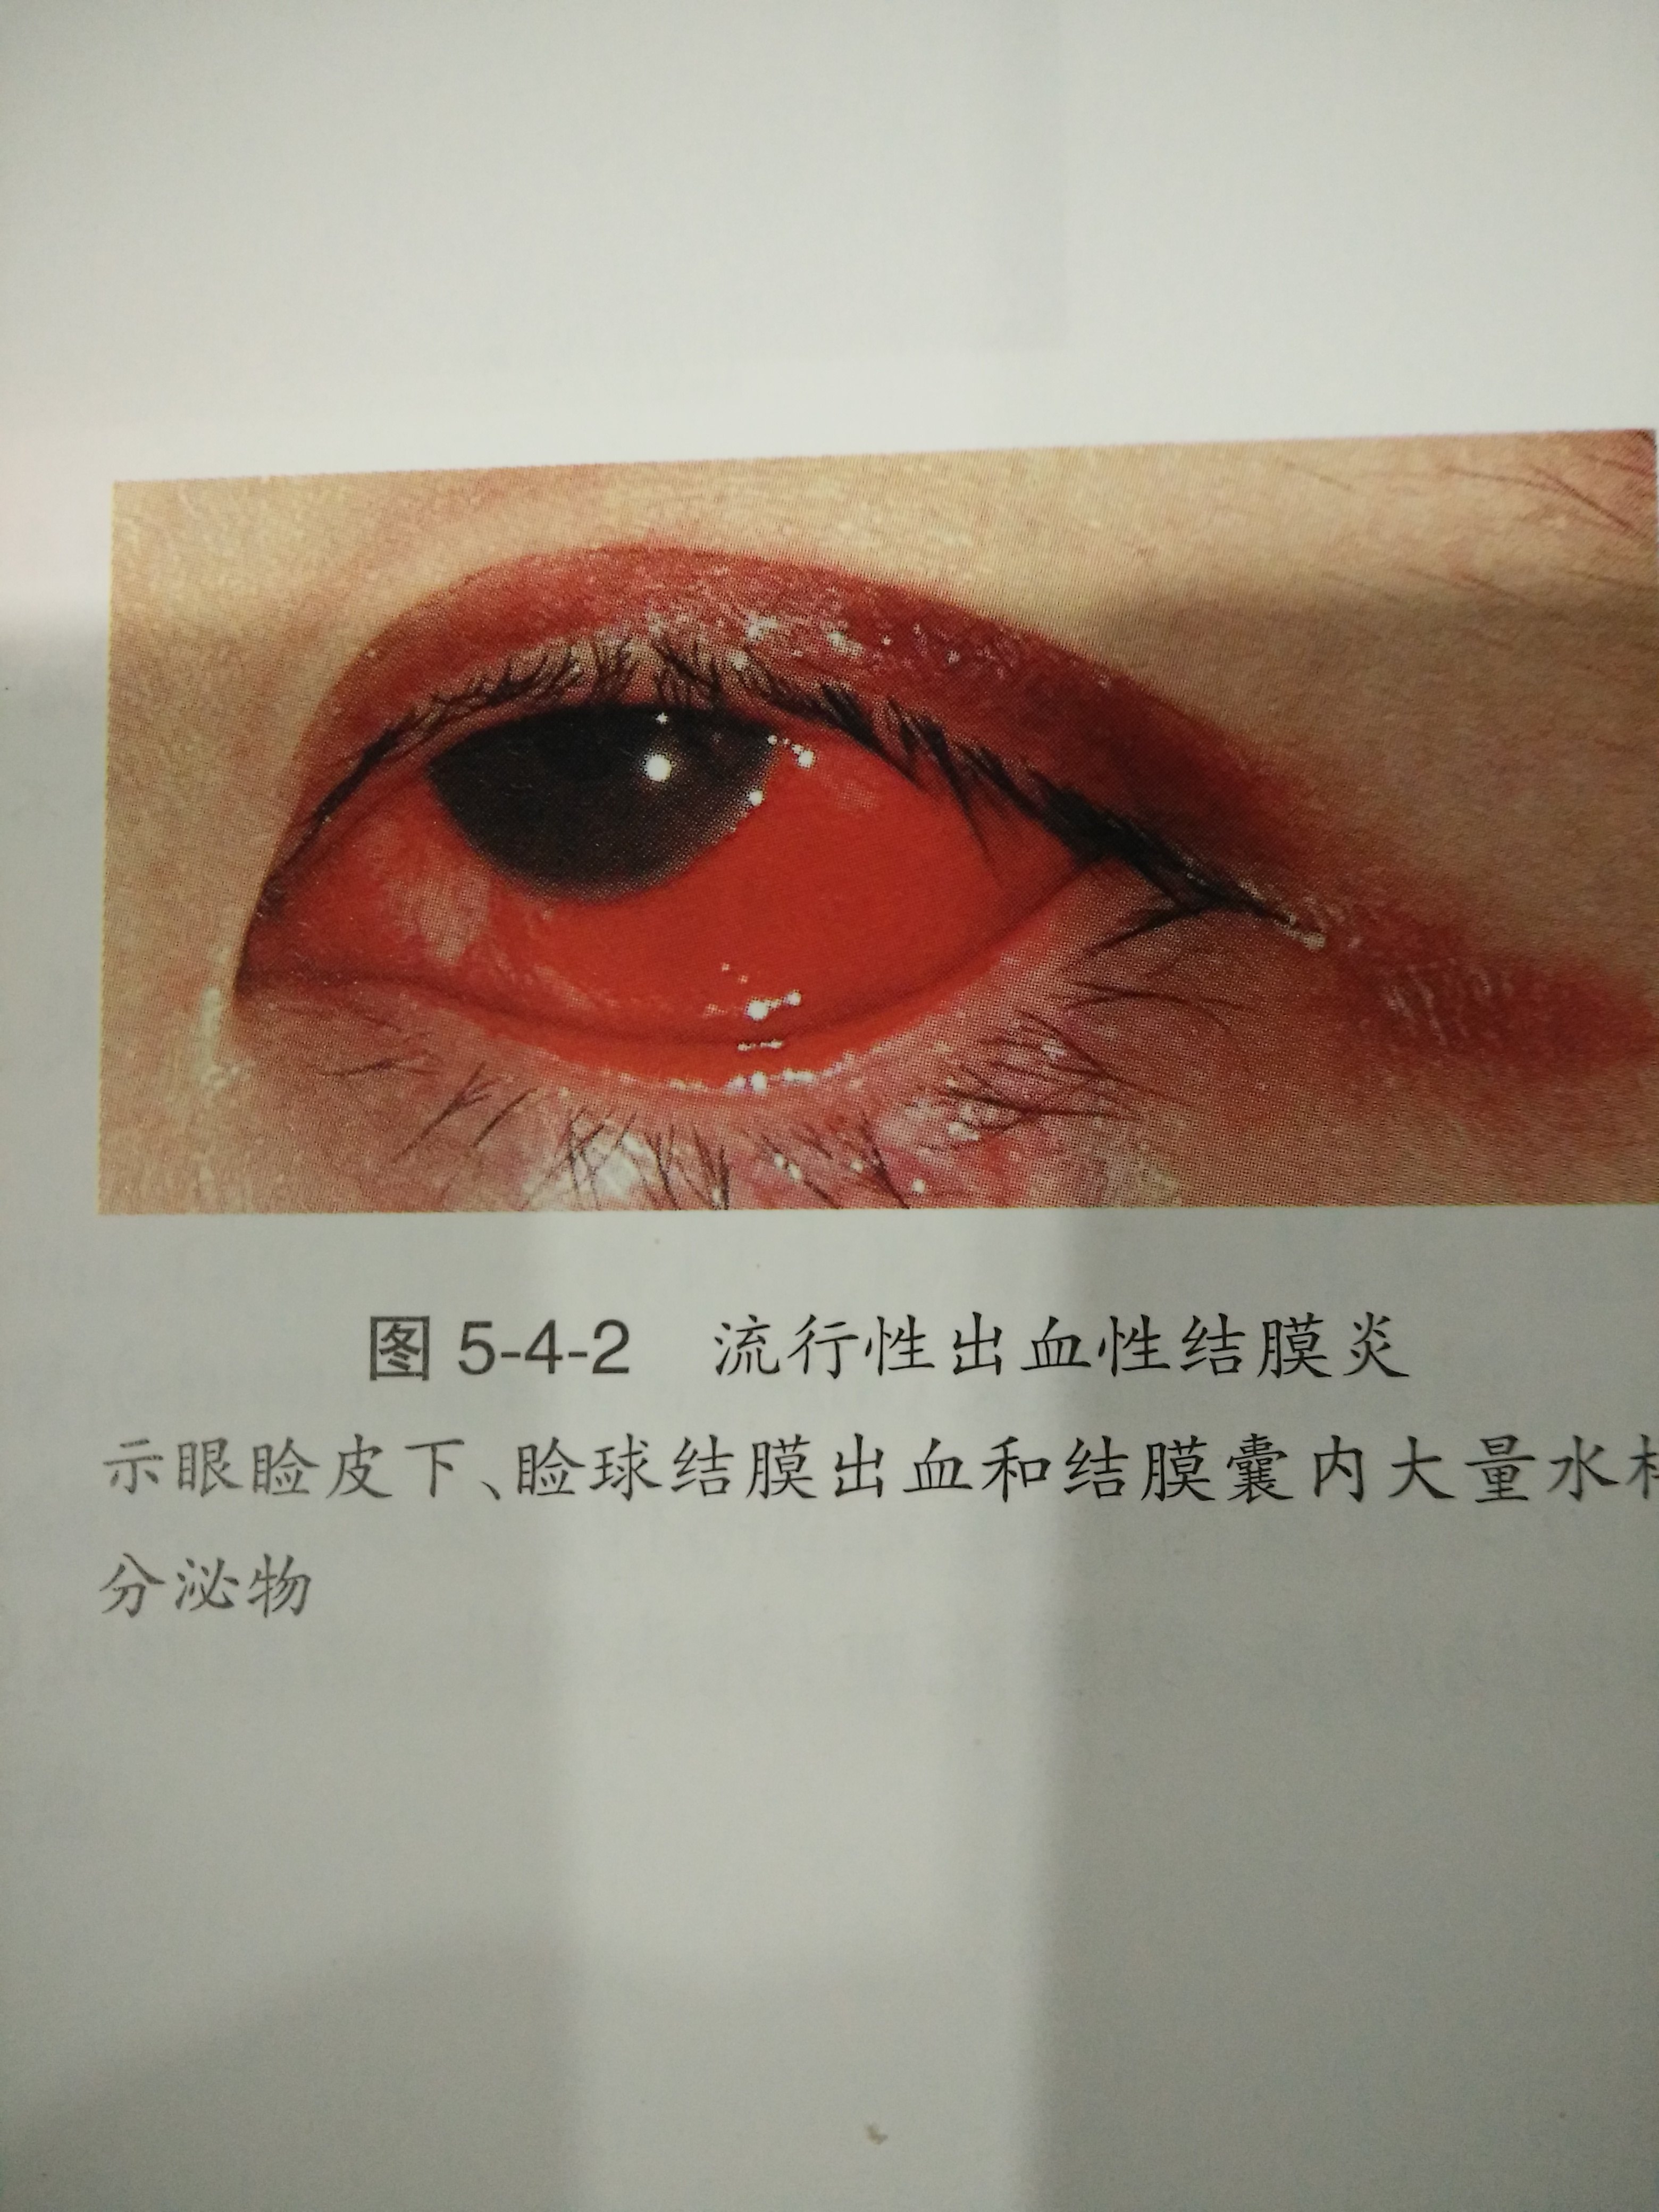 《一,概念 流行性出血性结膜炎又称急性出血性结膜炎(俗称红眼病